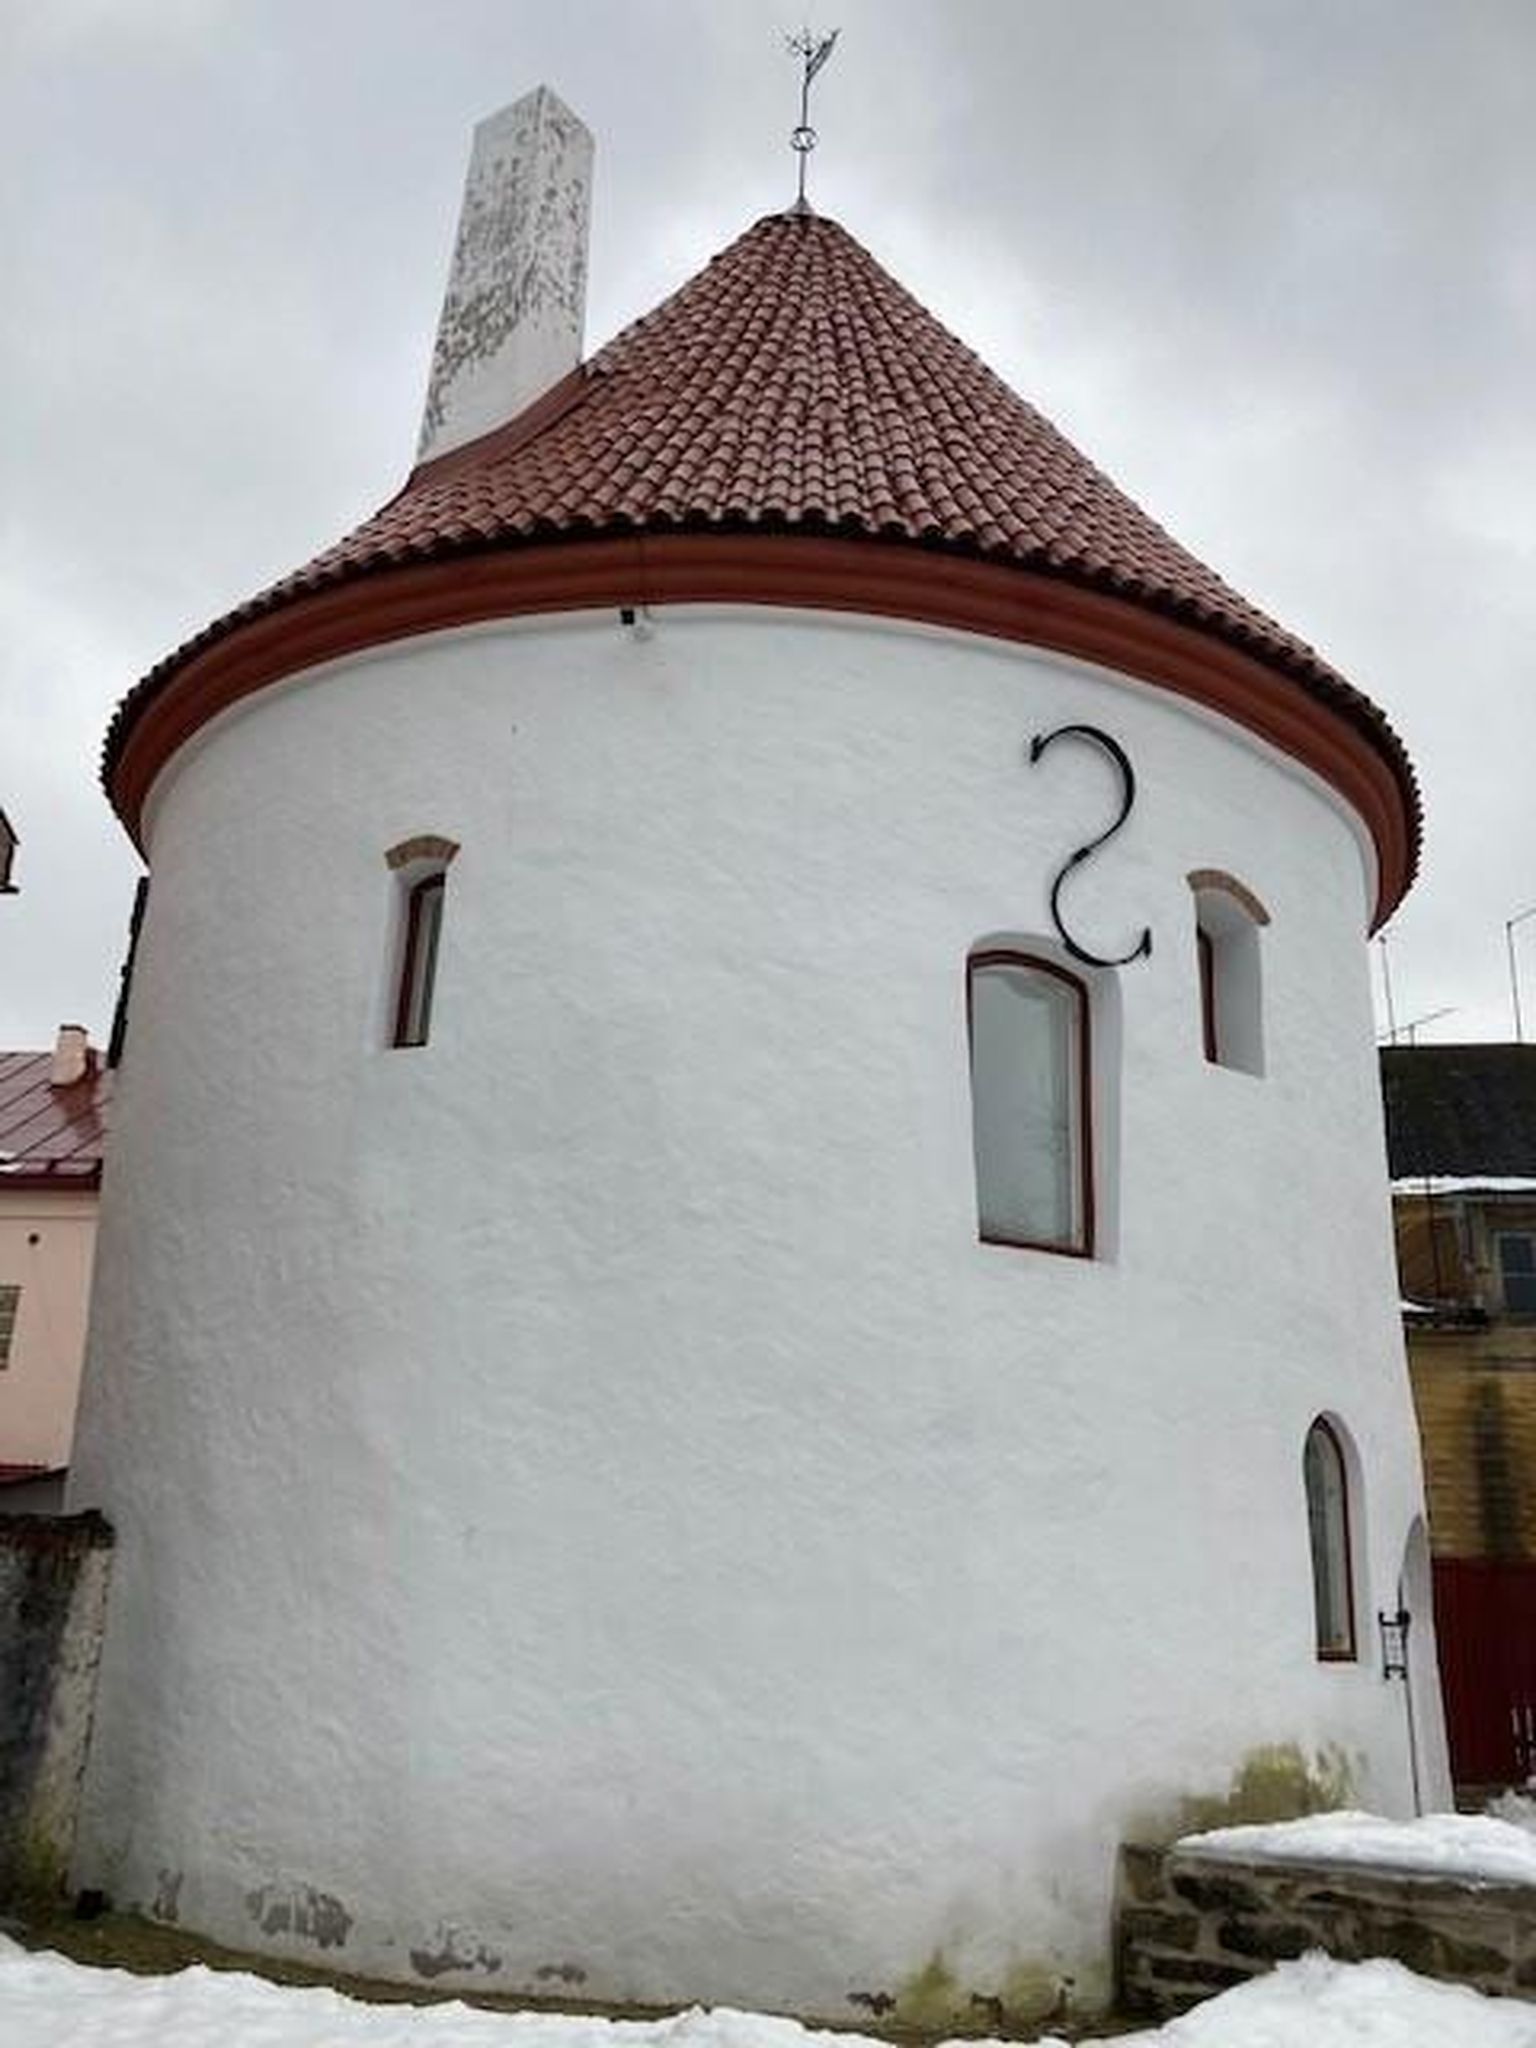 Pärnu Punane torn on haruldane tükike keskaegsest Pärnust, mille leiab kesklinnast hilisemate majade varjust.